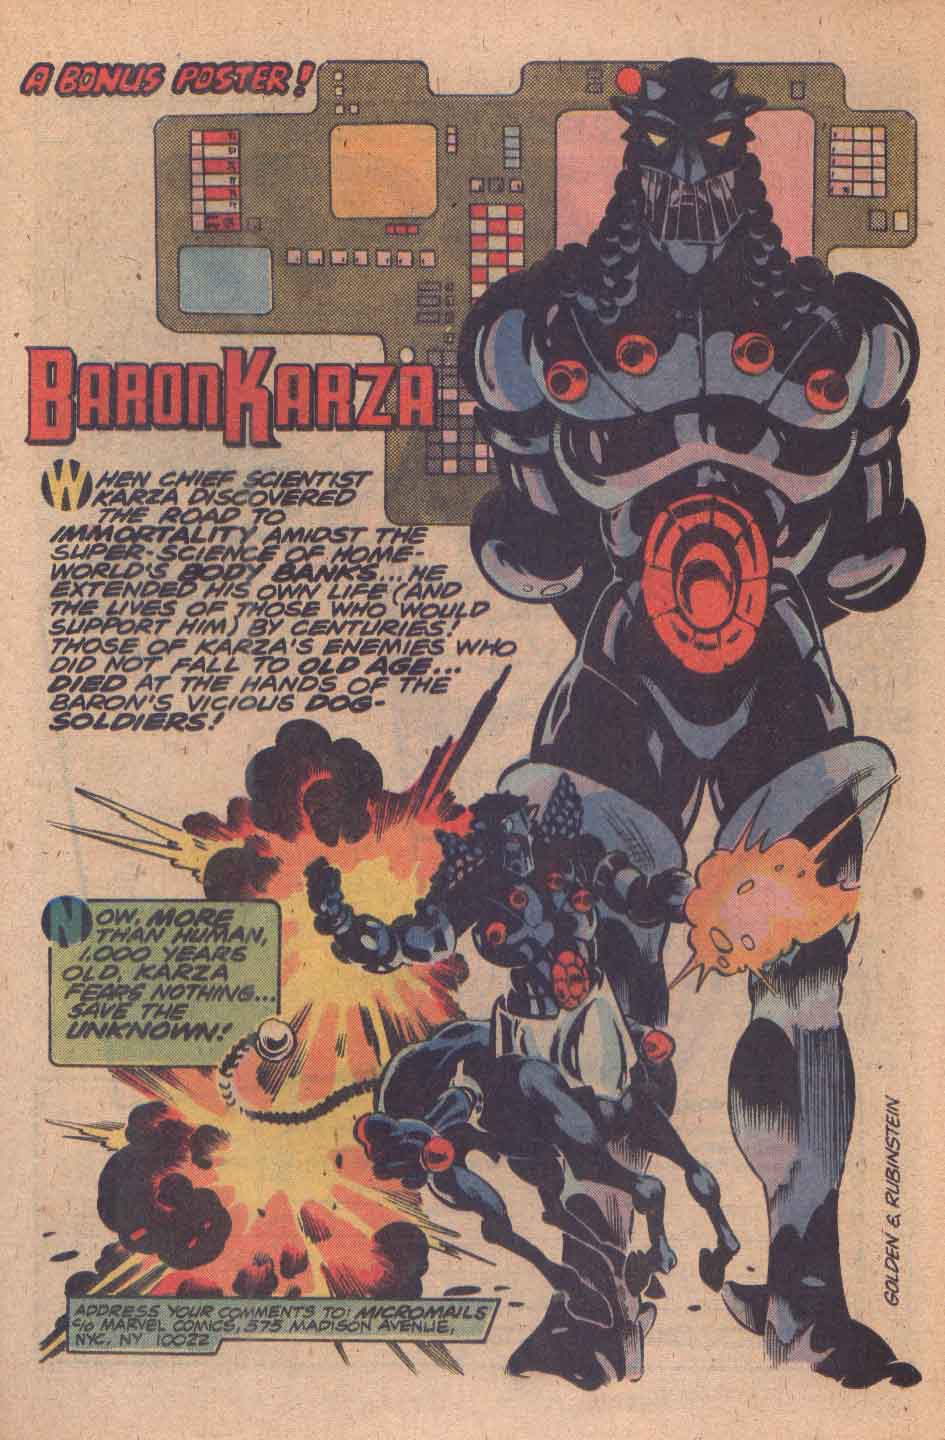 Marvel Comics Baron Karza biography